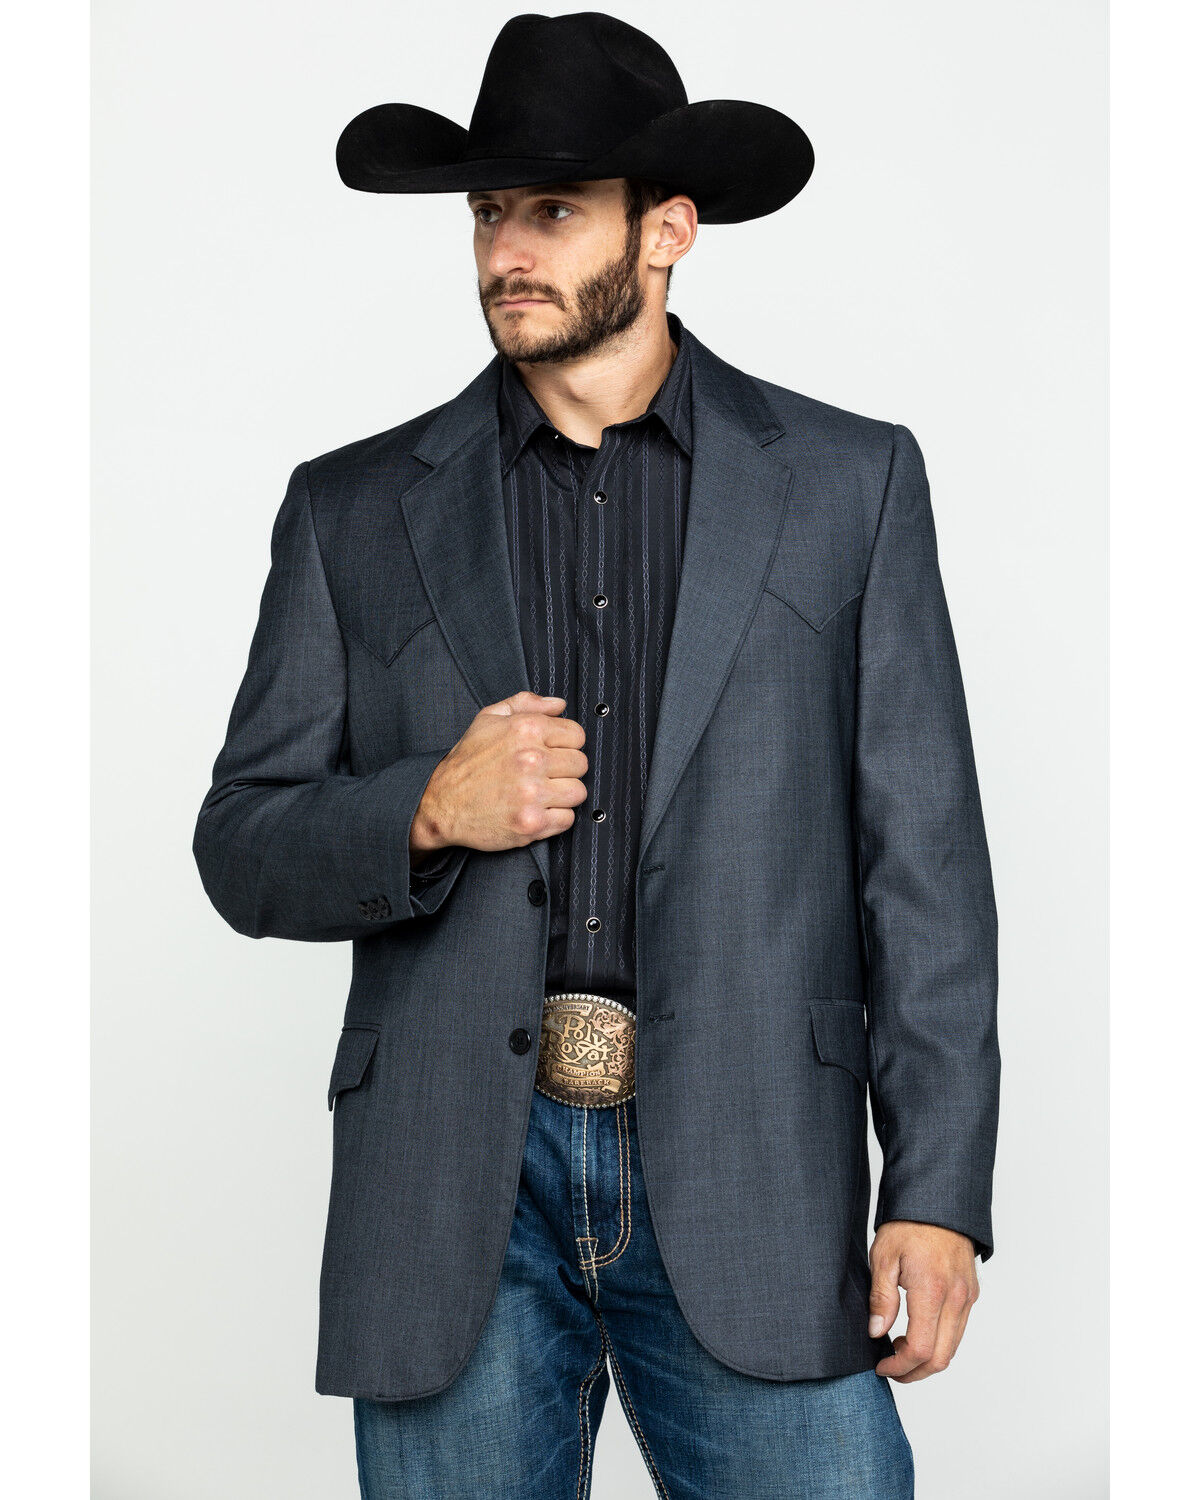 cowboy blazer outfit